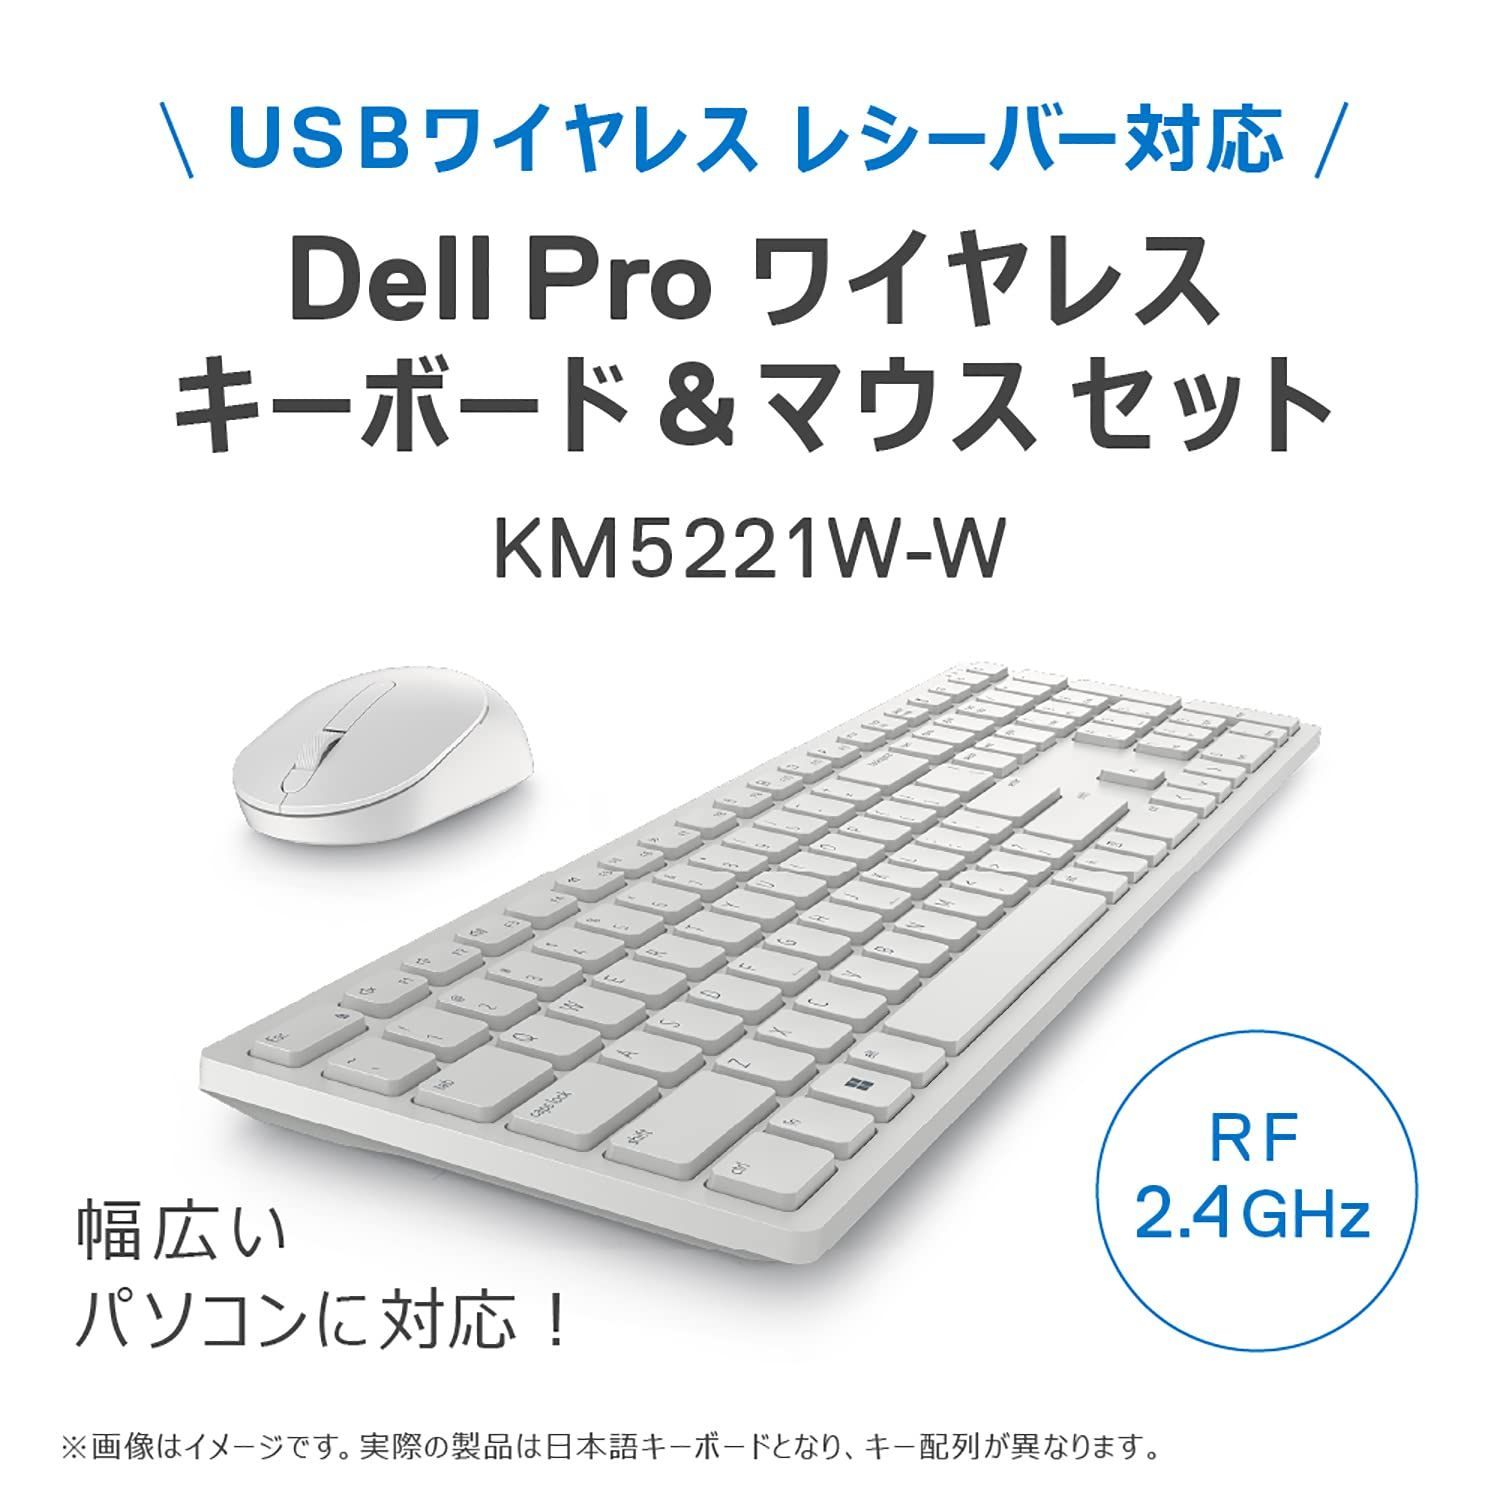 特価商品】キーボードu0026マウス(日本語) Proワイヤレス KM5221W Dell ホワイト - メルカリ